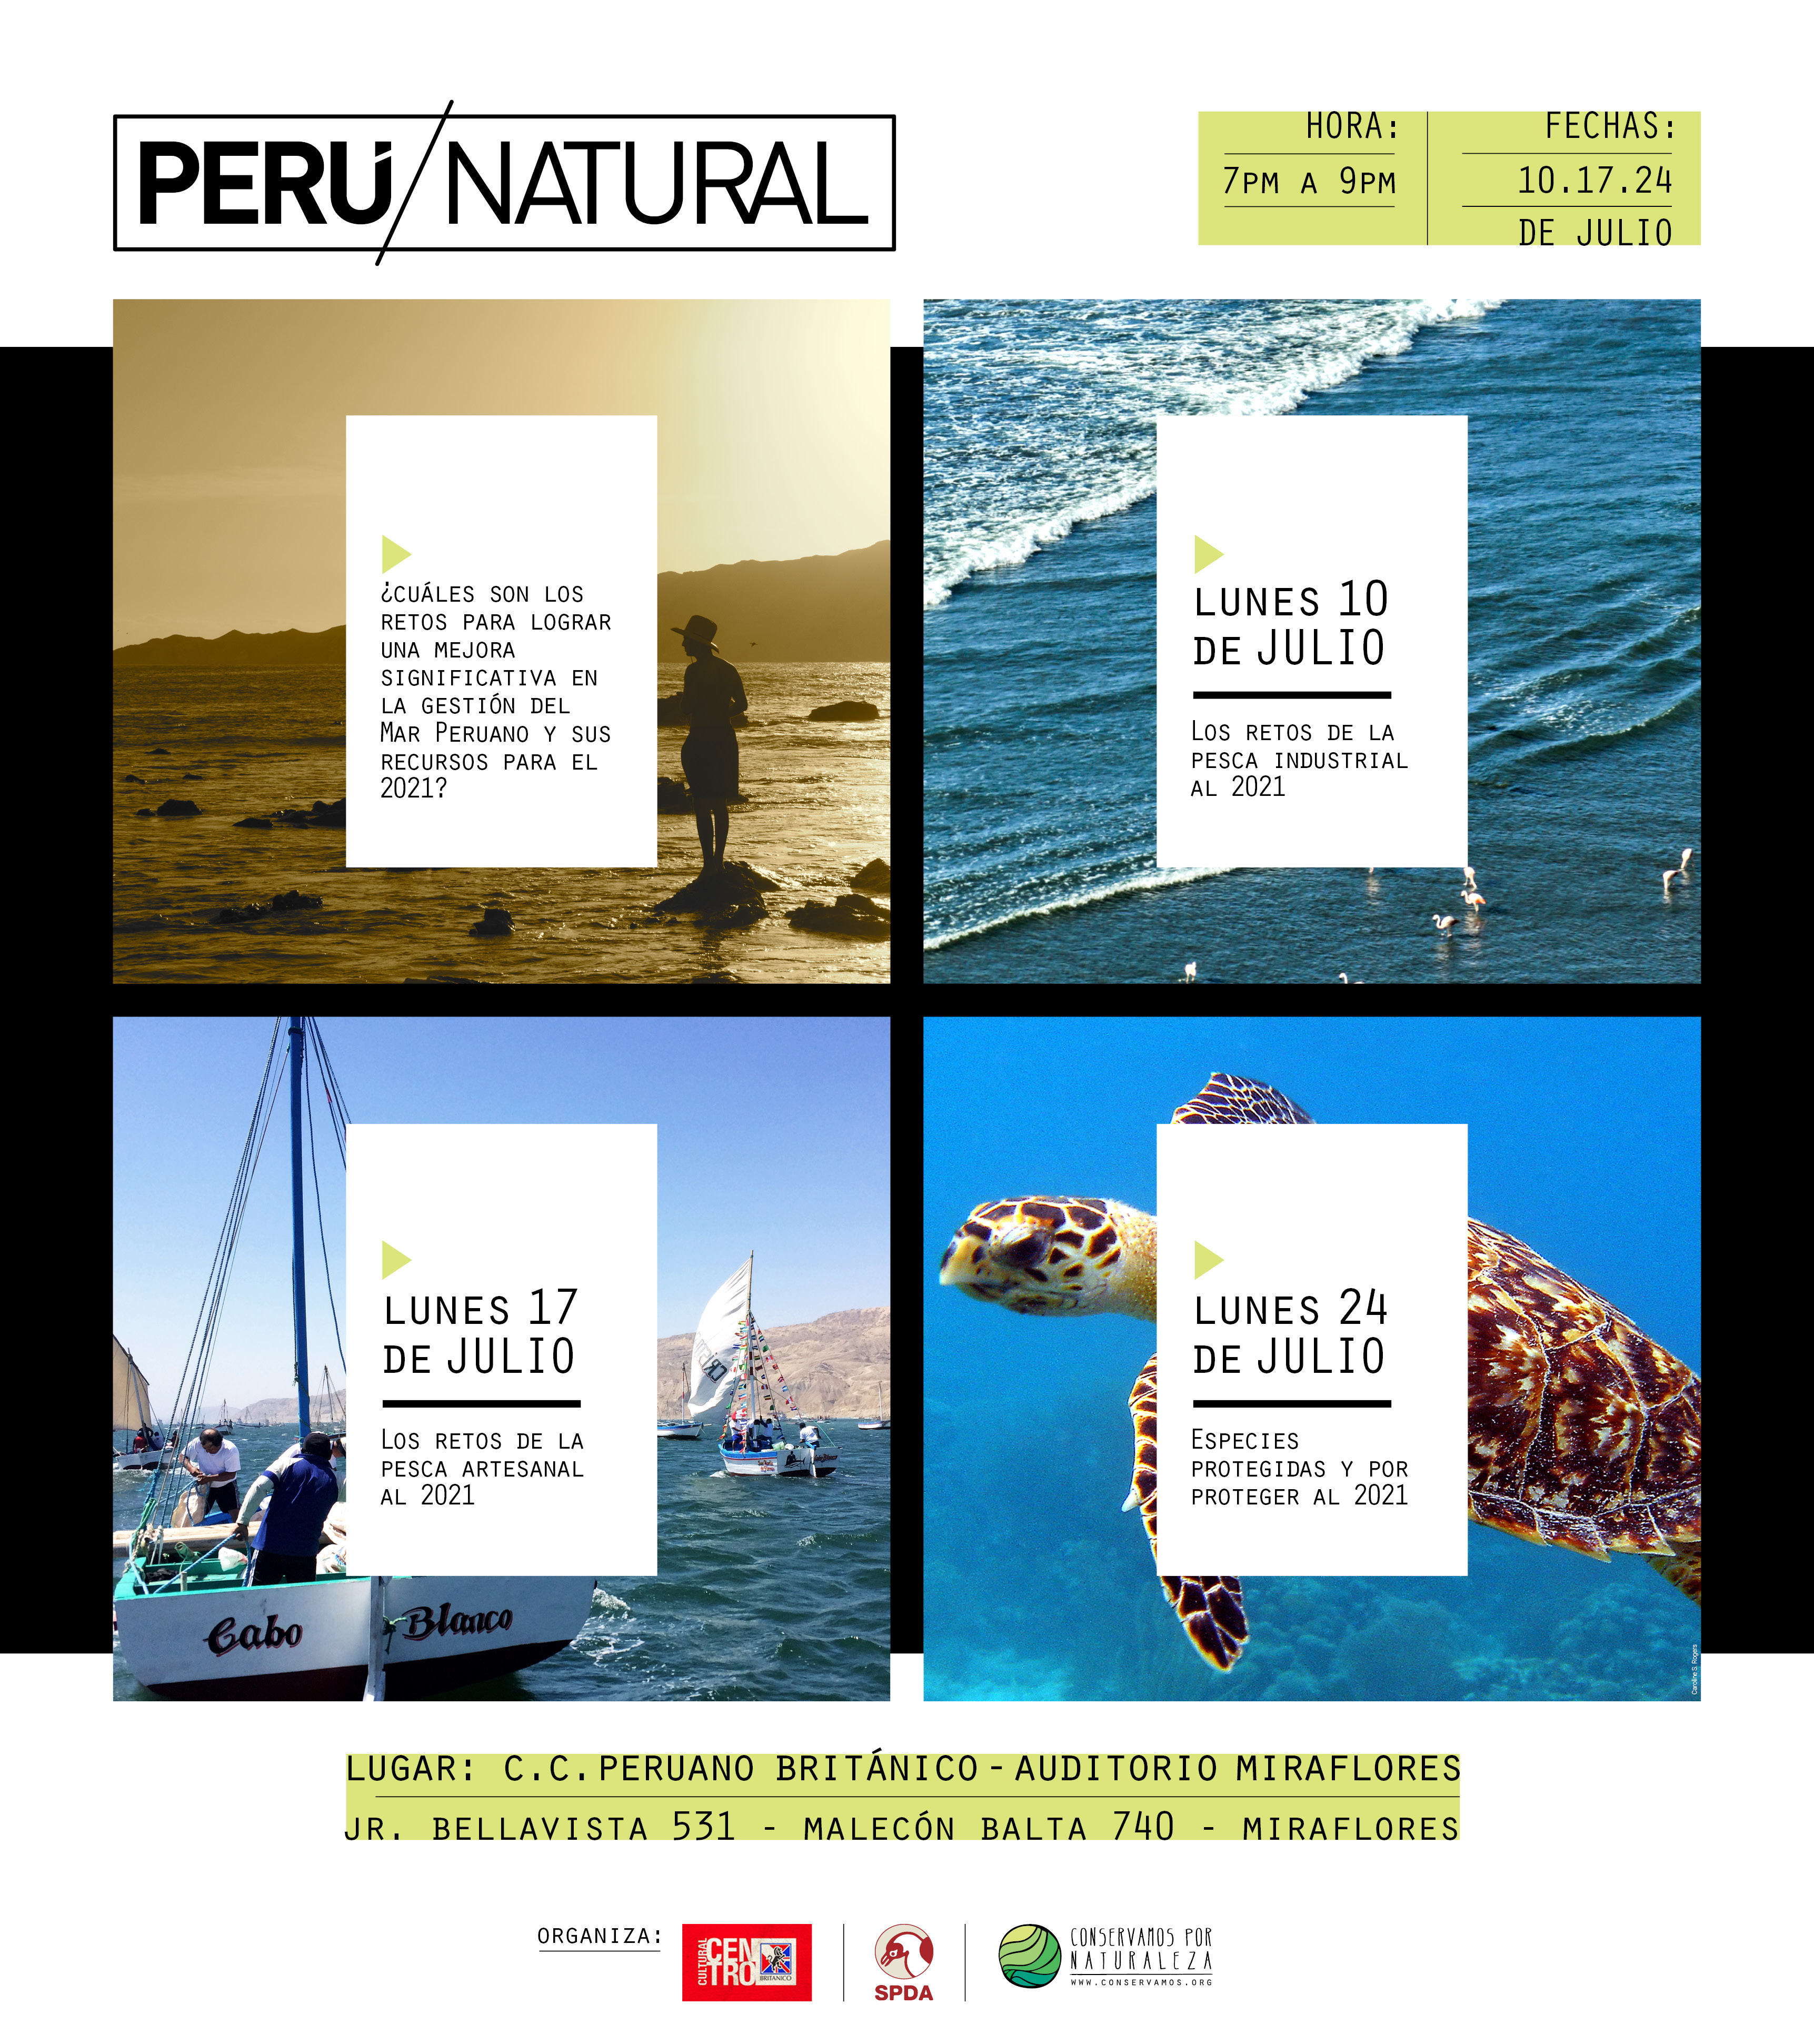 PERU-NATURAL-2017